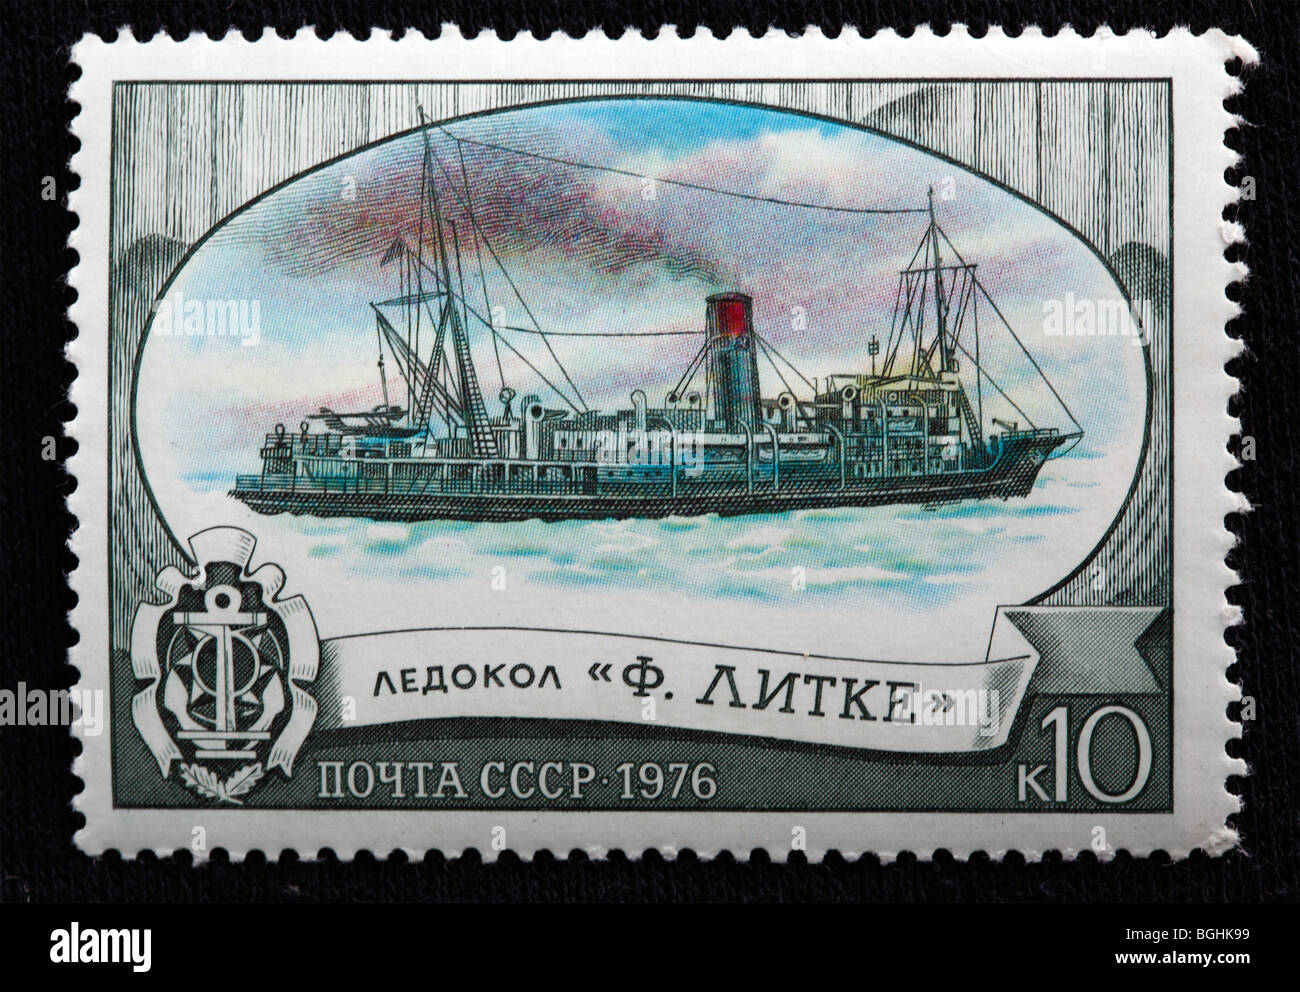 Russischen Eisbrecher "Lütke", Briefmarke, UdSSR, 1976 Stockfoto